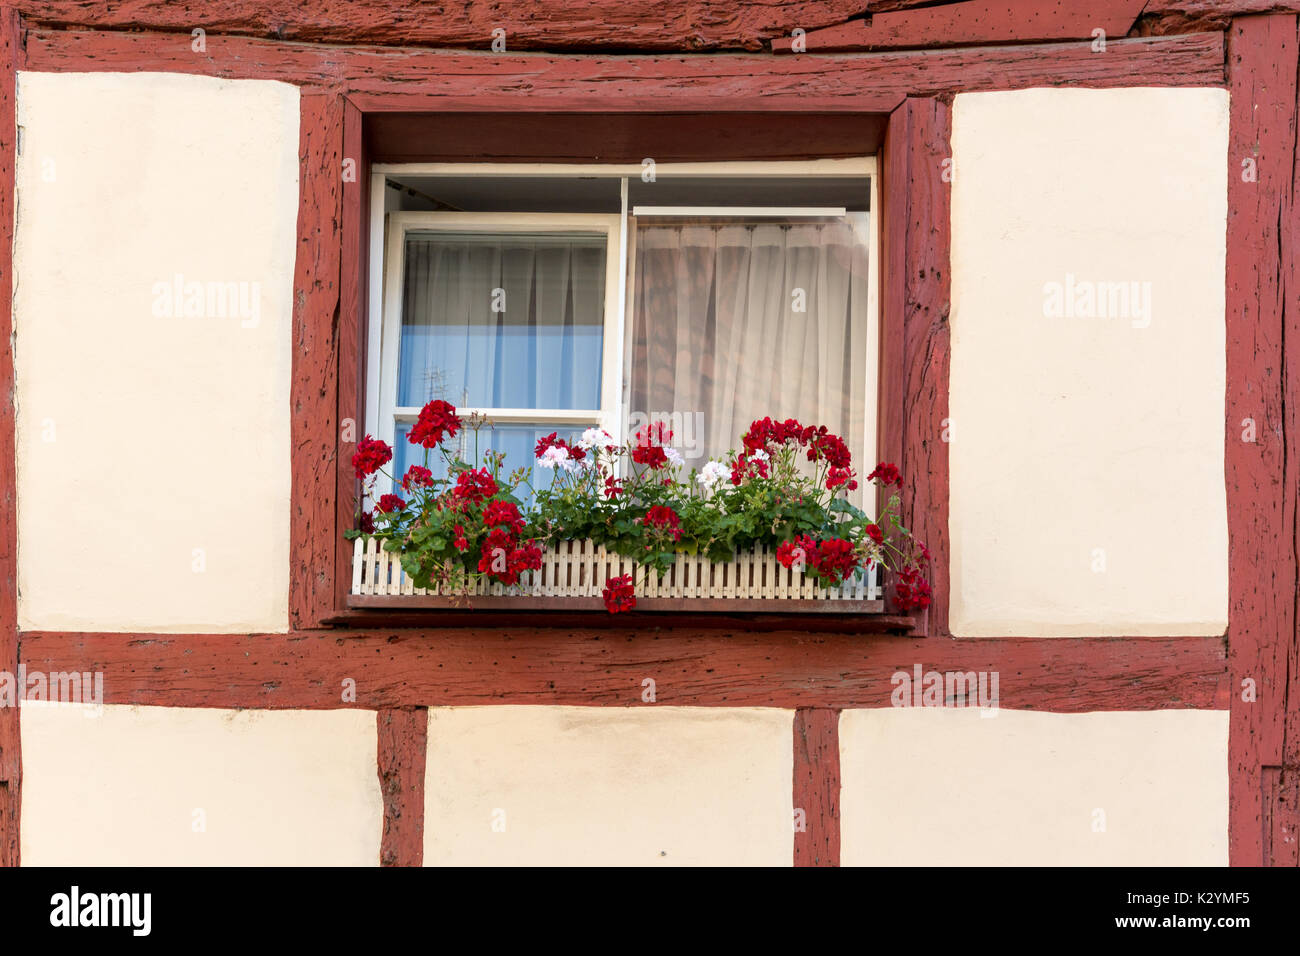 Maison à colombages avec des volets aux fenêtres et des fleurs colorées Banque D'Images